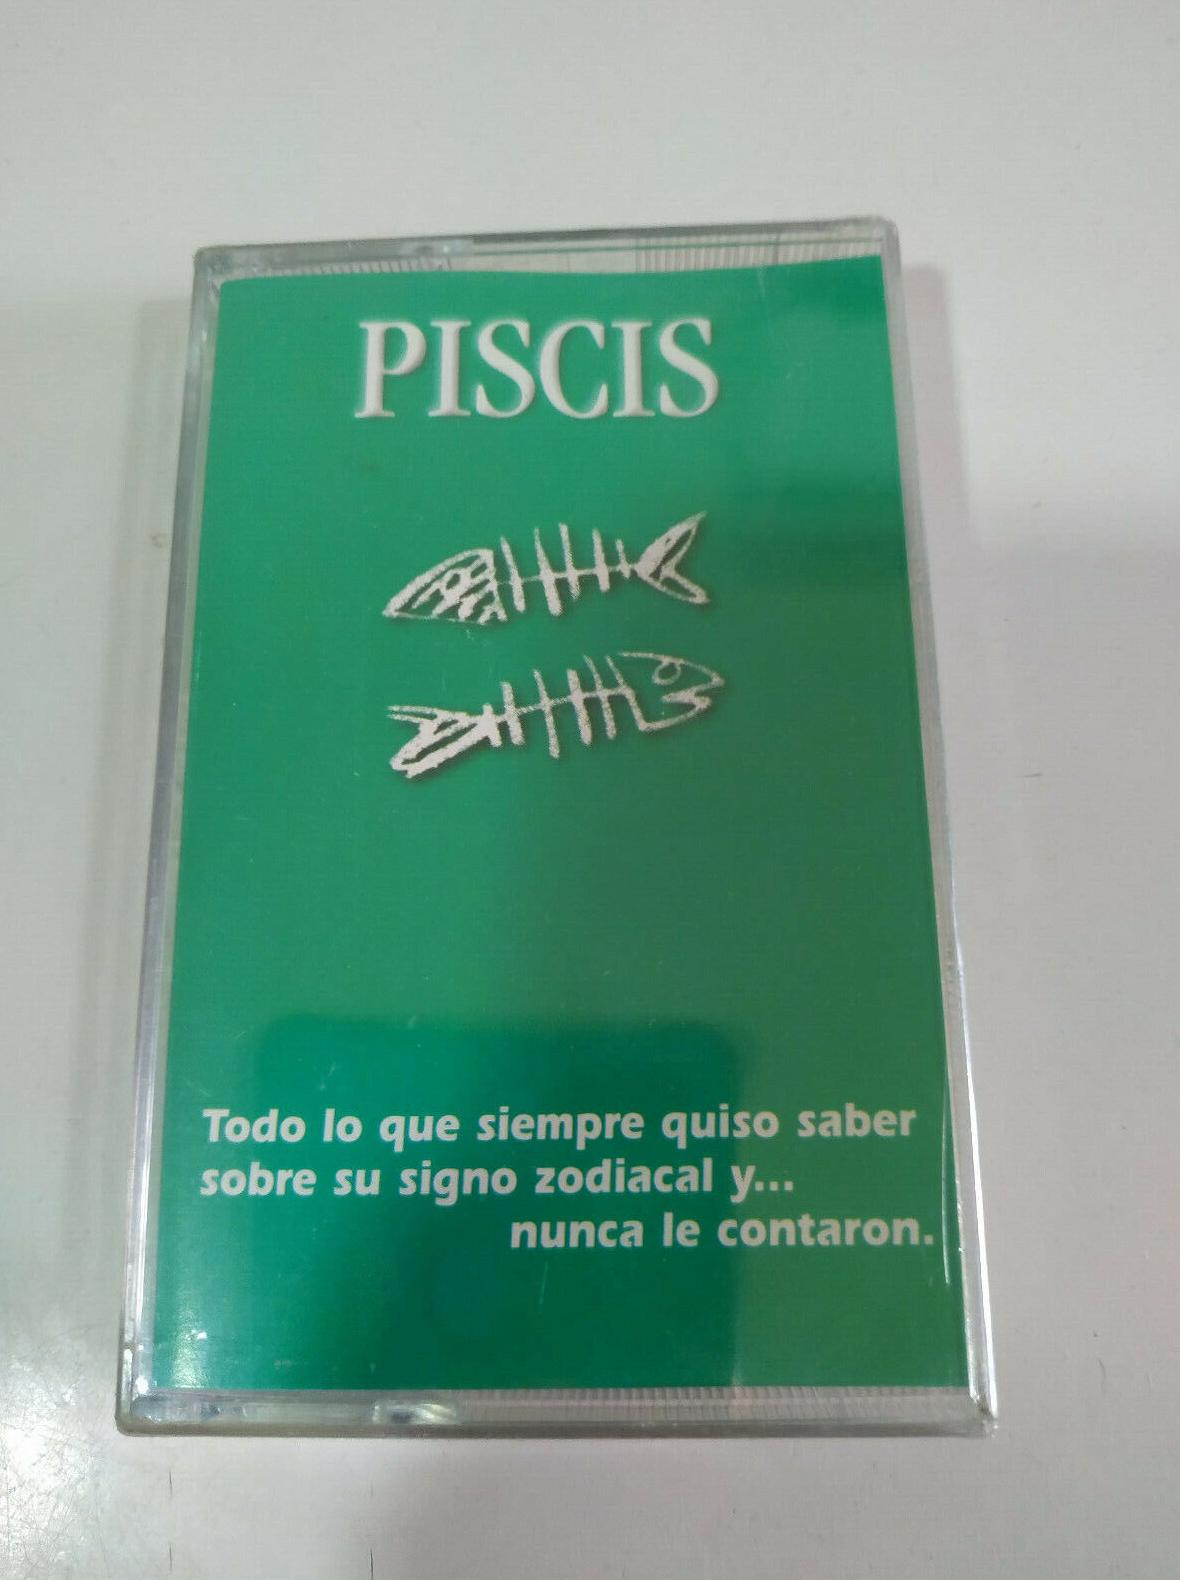 សញ្ញានៃព្រះច័ន្ទនិងការកើនឡើងនៃ Pisces